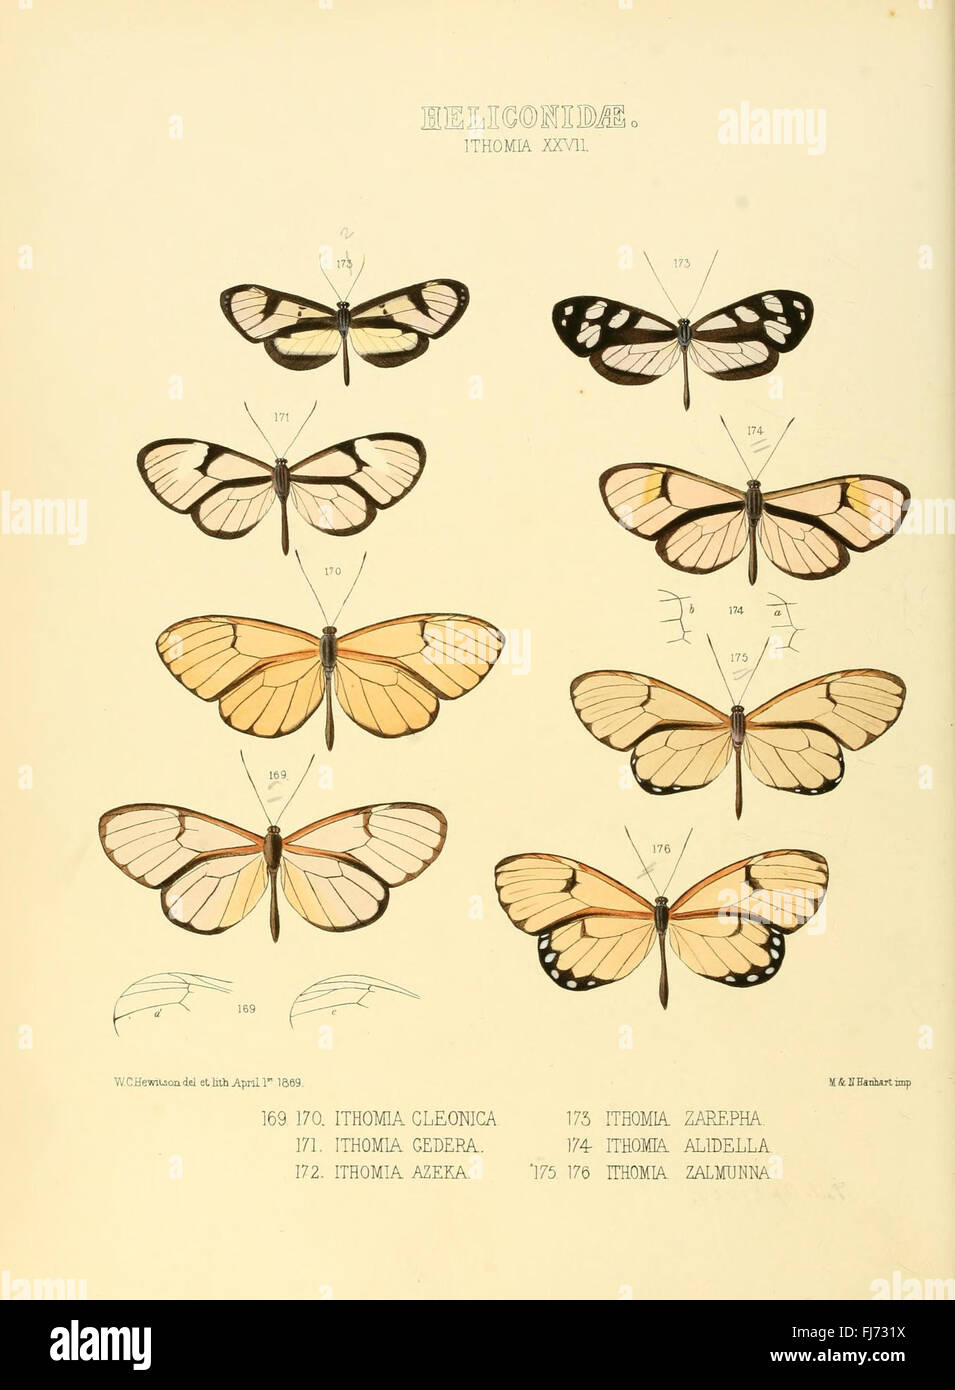 Illustrazioni di nuove specie di farfalle esotiche (Heliconidae- Ithomia XXVII) Foto Stock